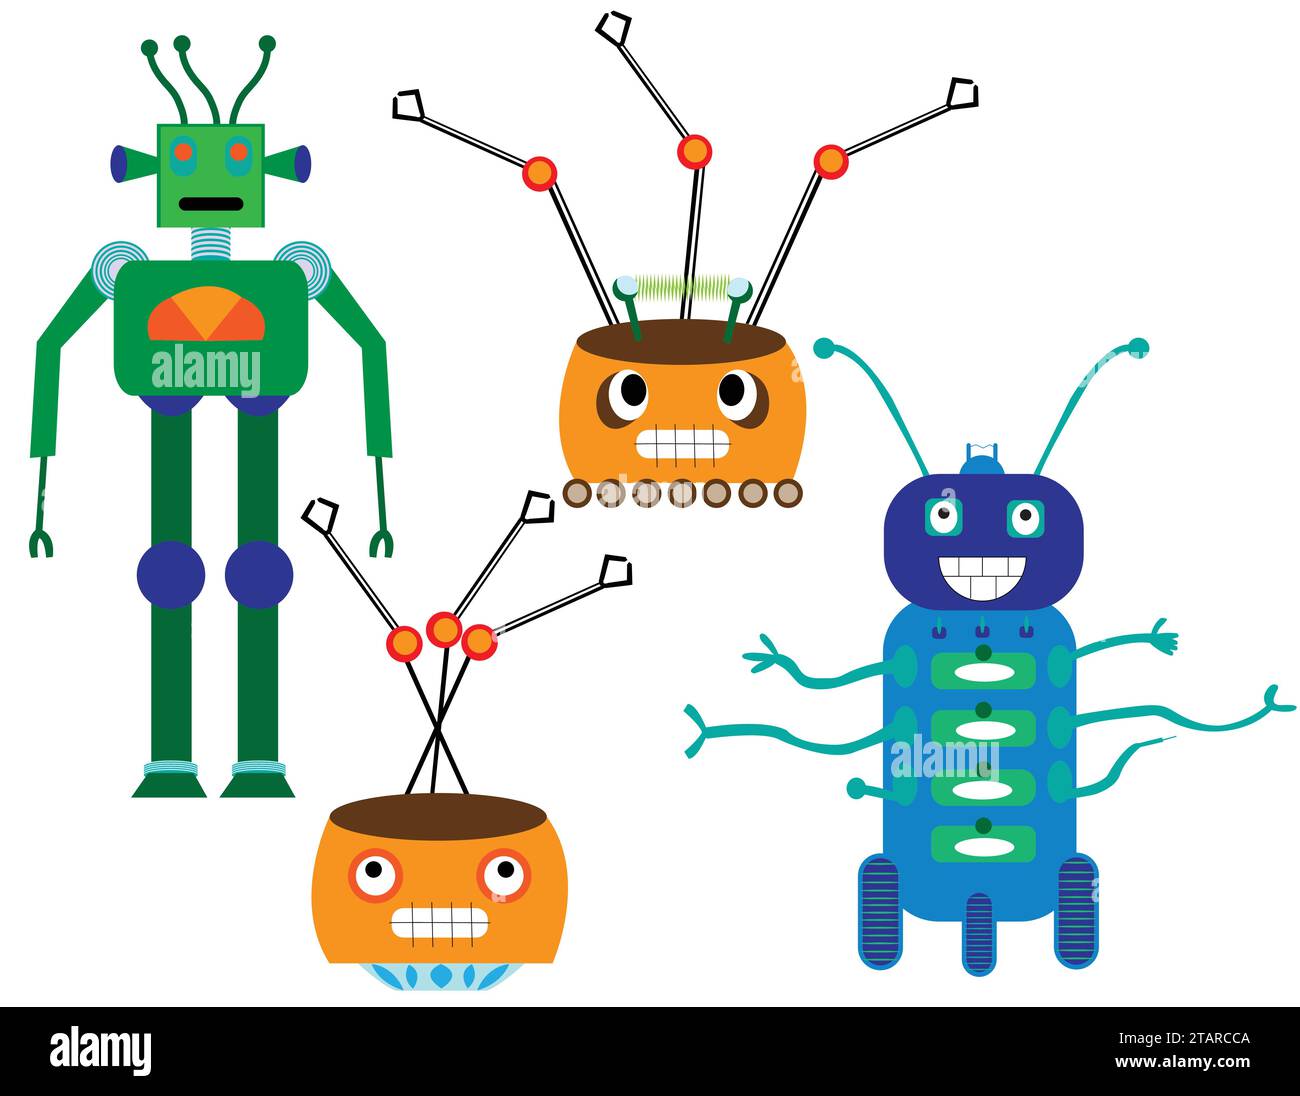 Robot ha isolato i personaggi per vari tipi di utilizzo; design di robot furbi, tecnologia cartoonata Illustrazione Vettoriale